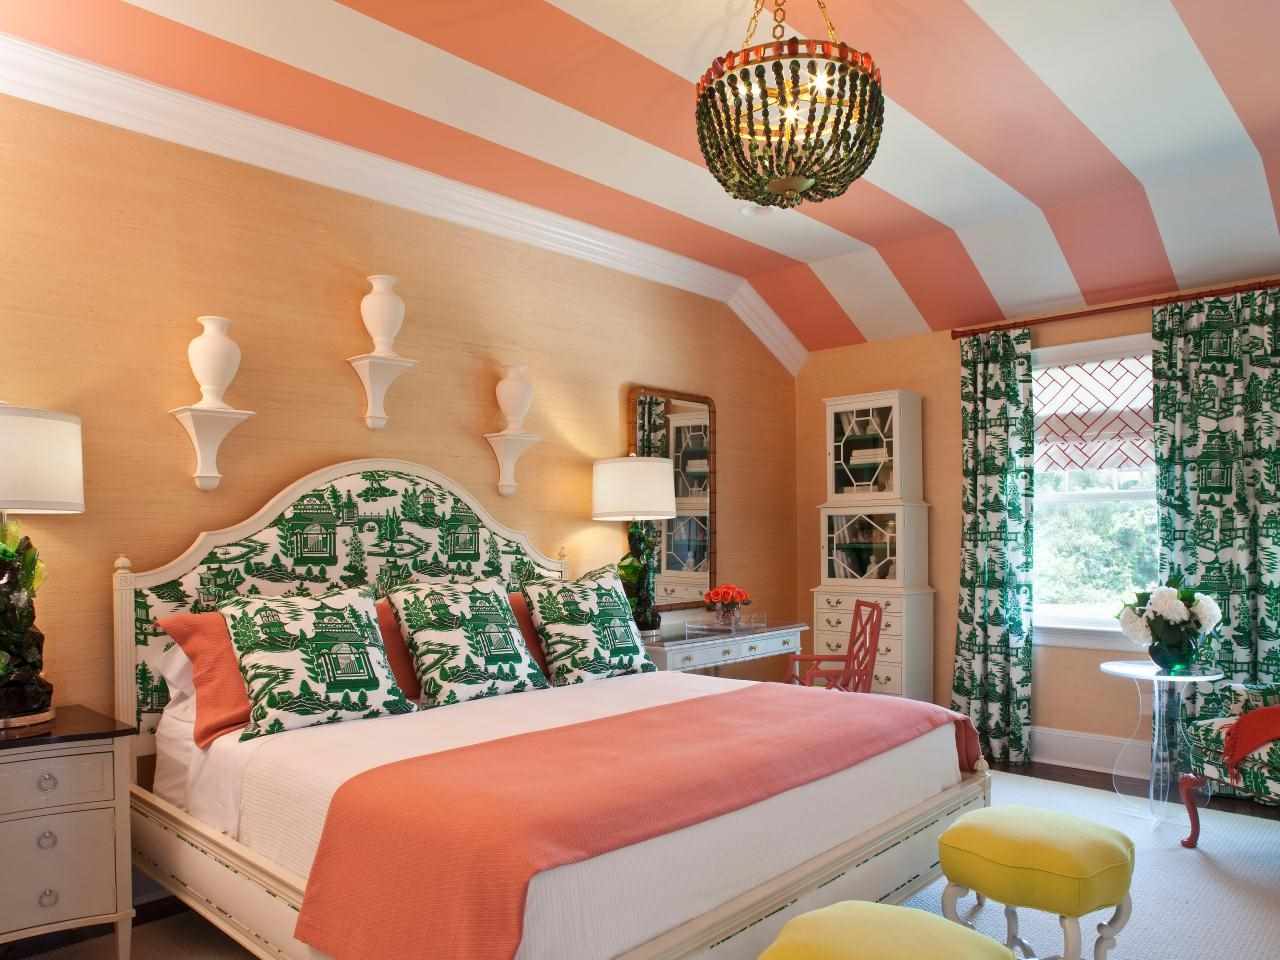 Šviesios persikų spalvos derinio pavyzdys projektuojant butą